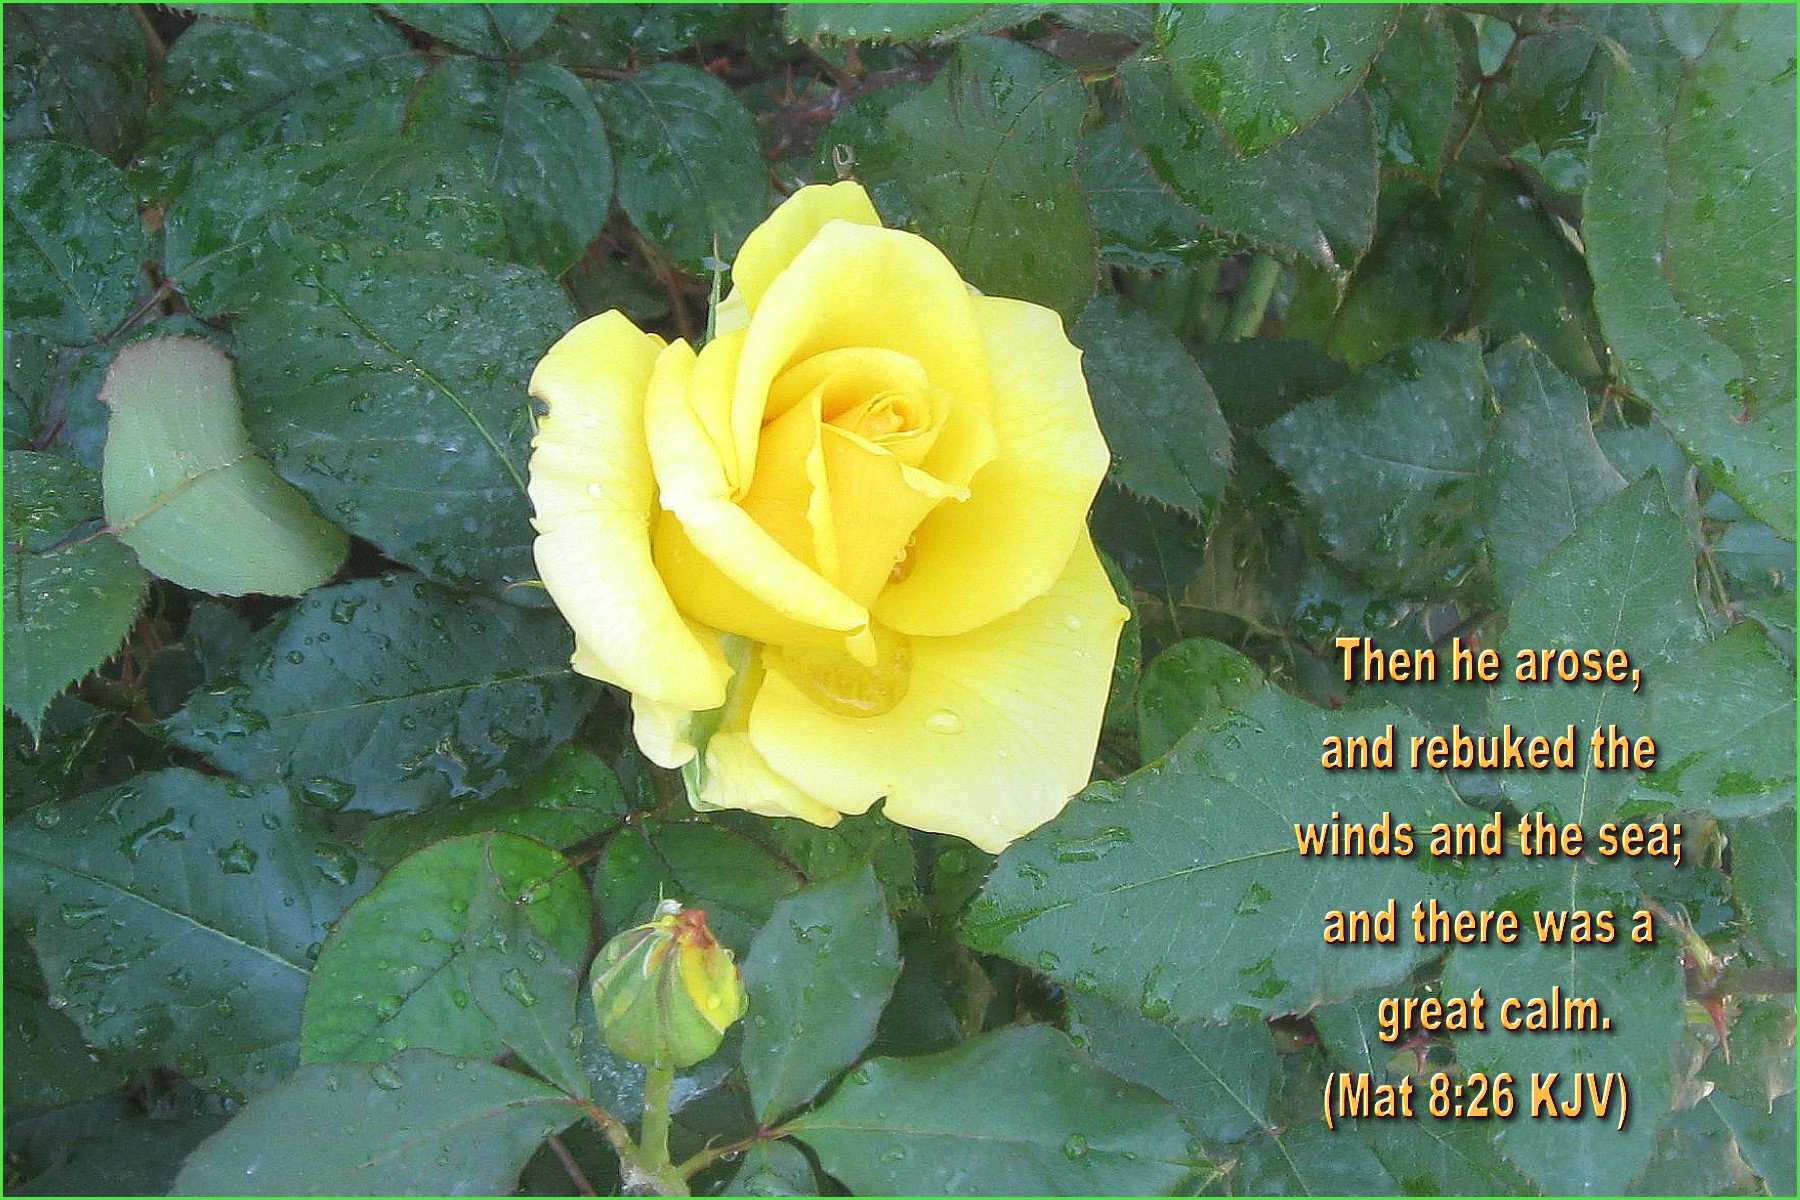 verso de la biblia fondo de pantalla,flor,planta floreciendo,julia niño rosa,floribunda,amarillo